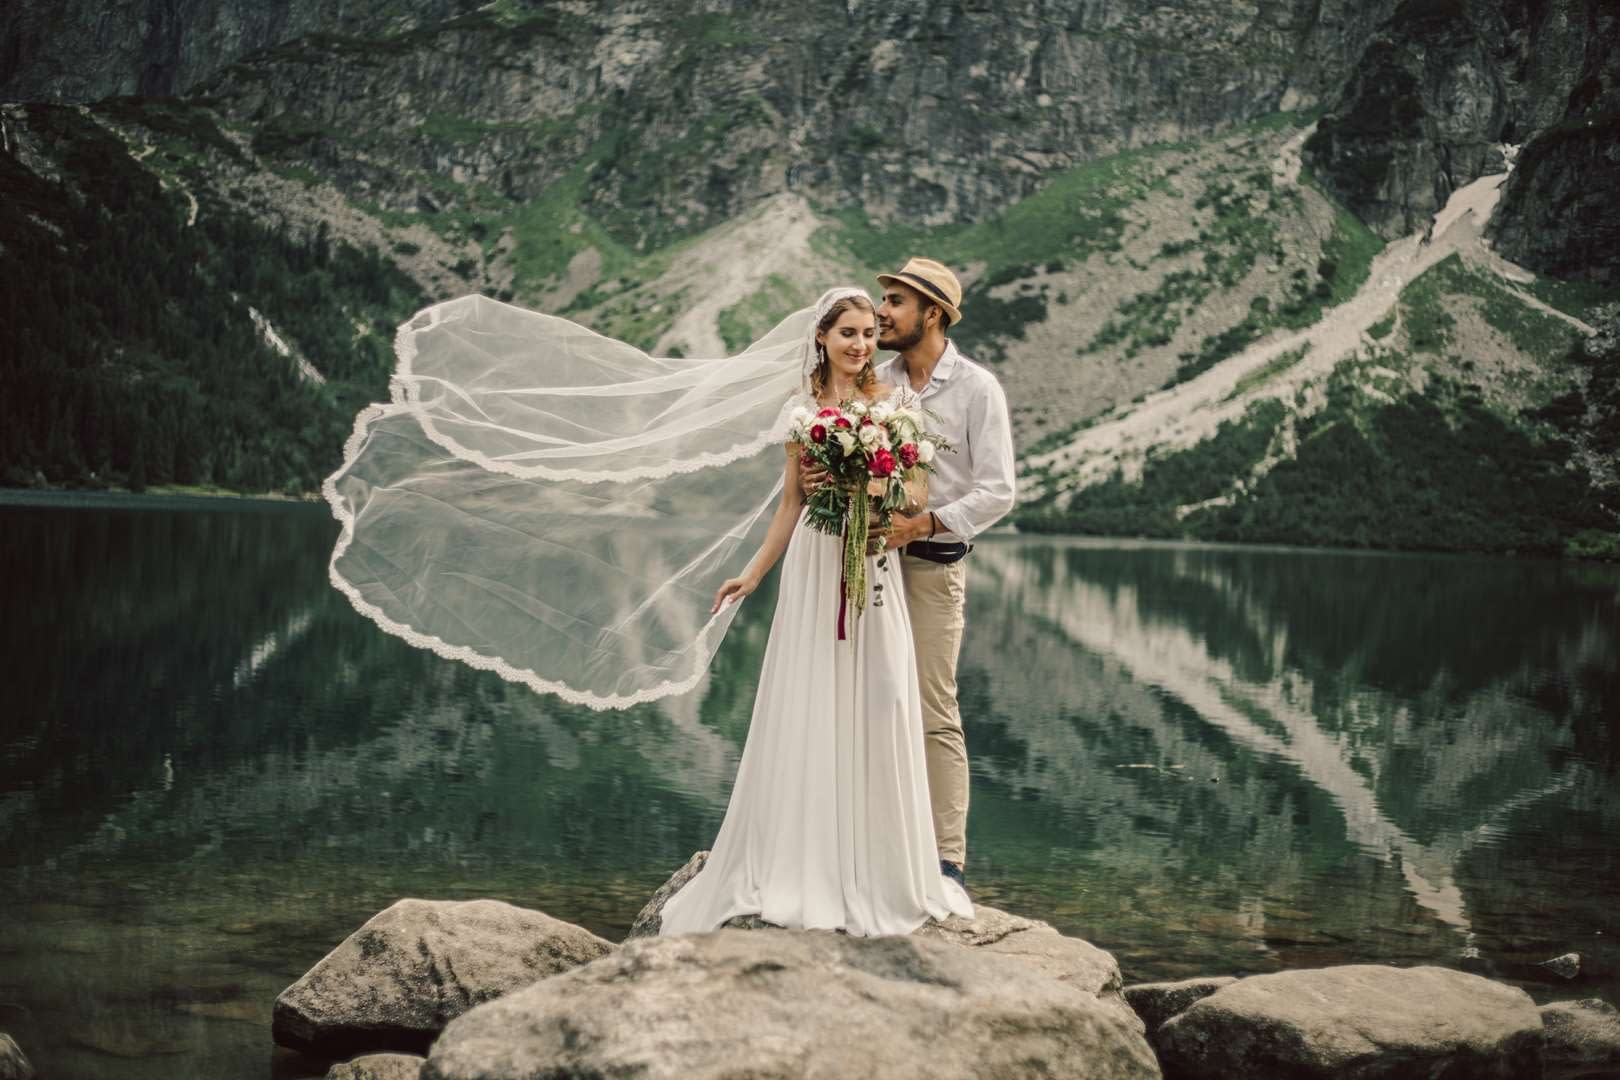 Sesja ślubna w górach, międzynarodowa para, fotograf z Krakowa.